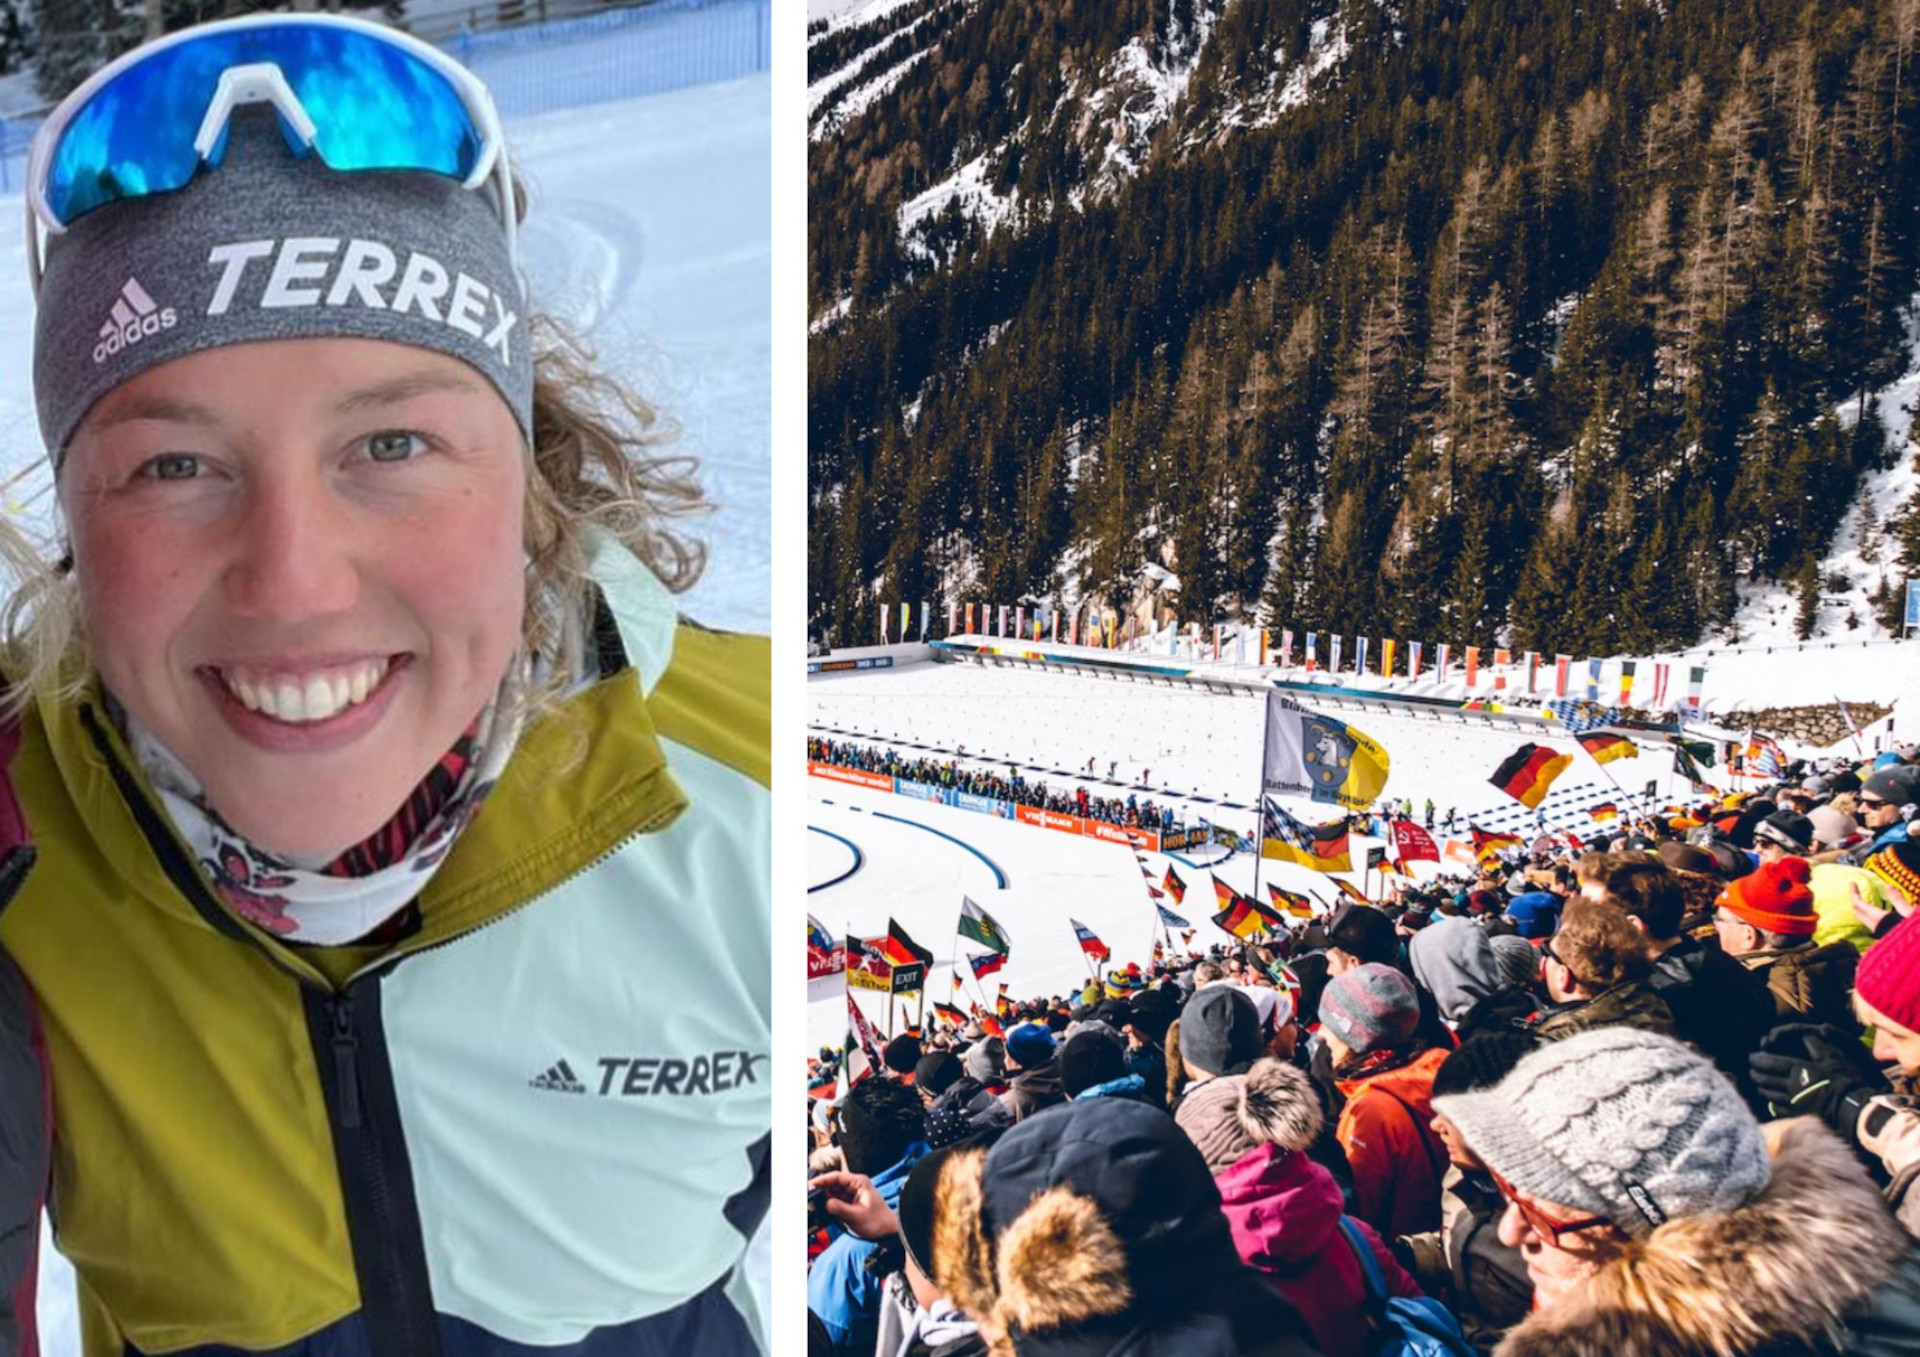 "Schwer zu rechtfertigen": Biathlon-Olympiasiegerin Dahlmeier kritisiert Wintersport